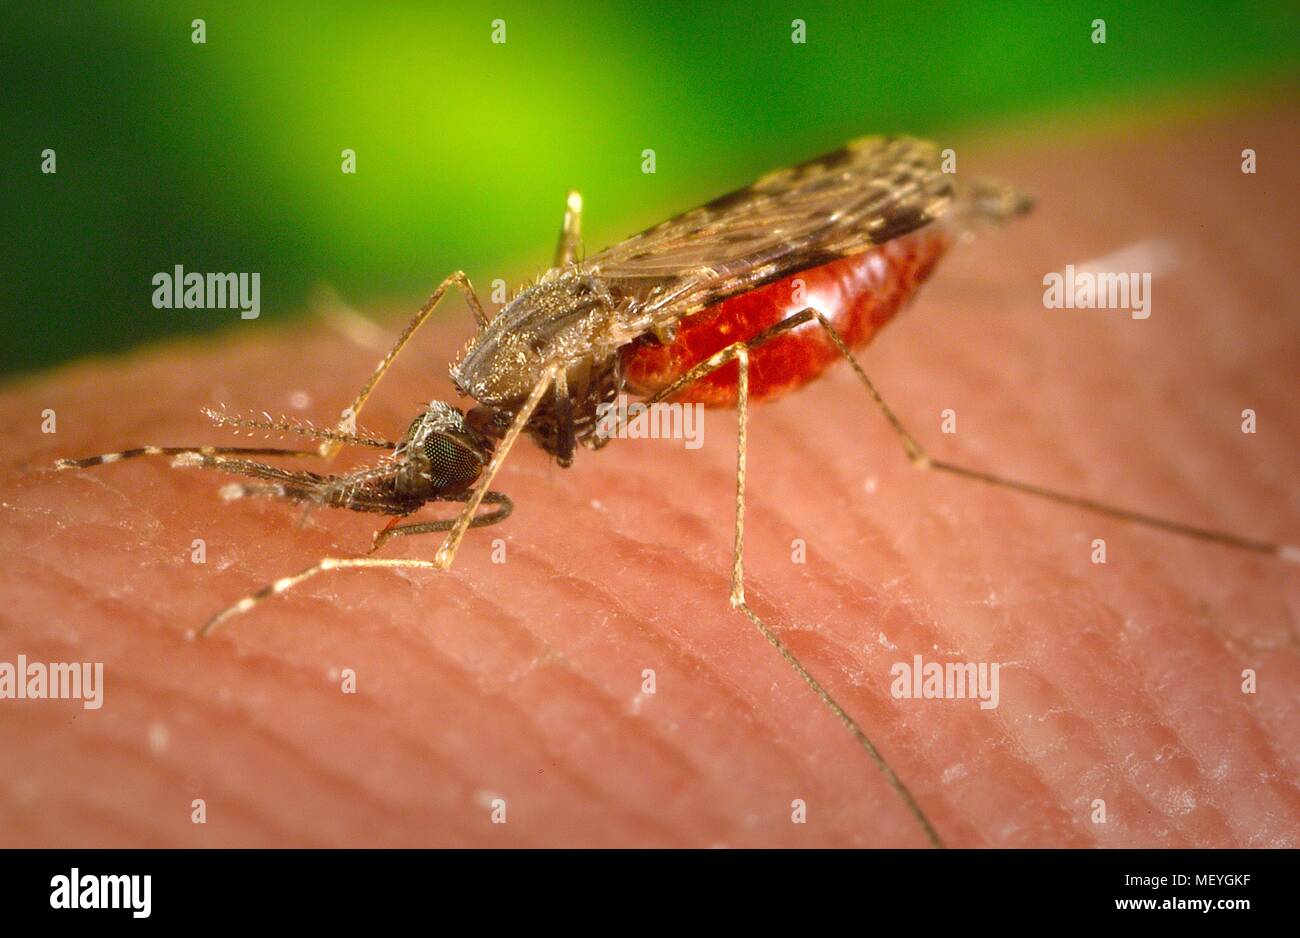 Femmina Anopheles albimanus zanzara, congestioni con il sangue, l'alimentazione sull'ospite umano, 2005. Immagine cortesia di centri per il controllo delle malattie (CDC). () Foto Stock